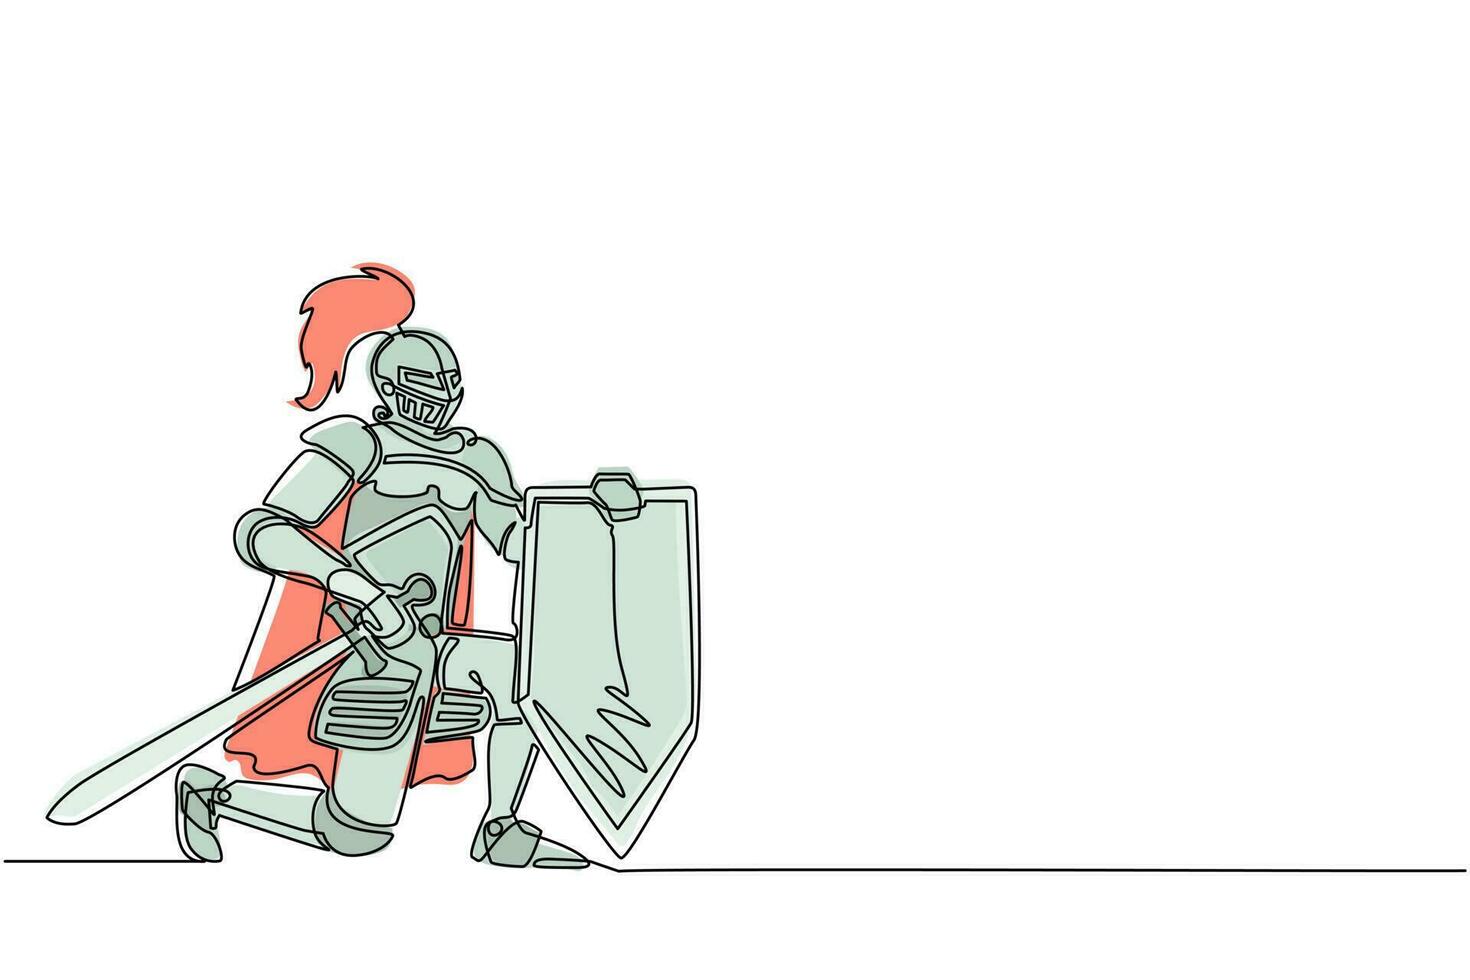 enda en rad teckning medeltida krigare på knä och svär trohet. riddare i rustning håller svärd, sköld och avlägger ed på sitt knä. kontinuerlig linje rita design grafisk vektorillustration vektor